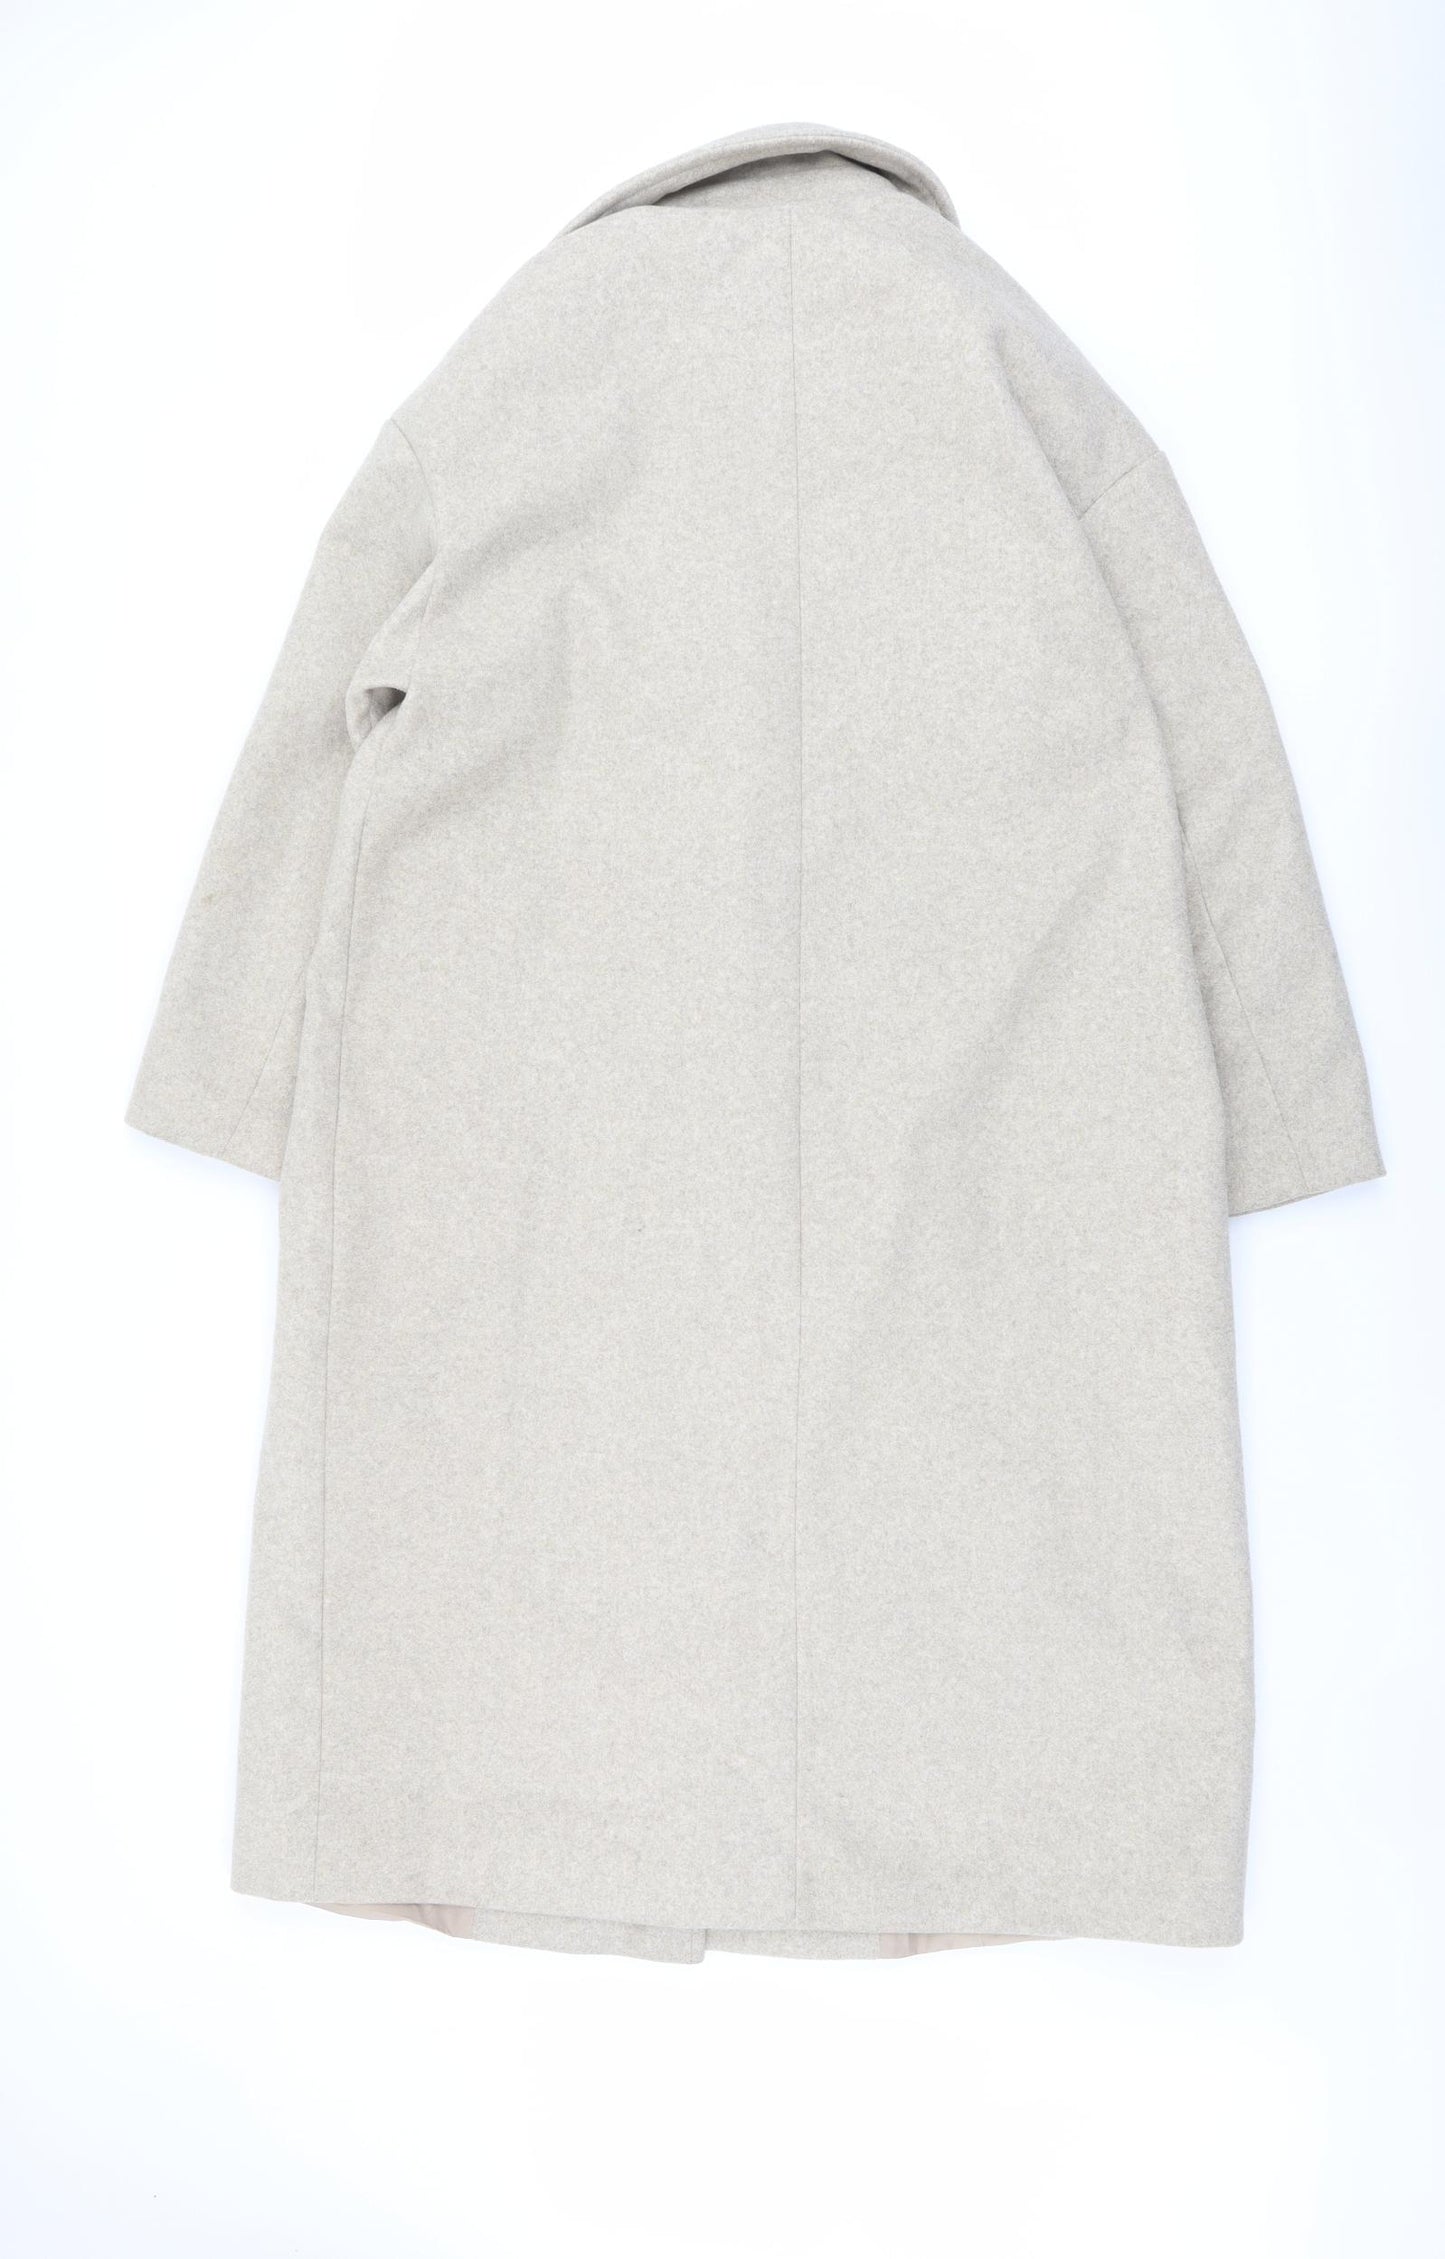 Zara Womens Beige Overcoat Coat Size S Button